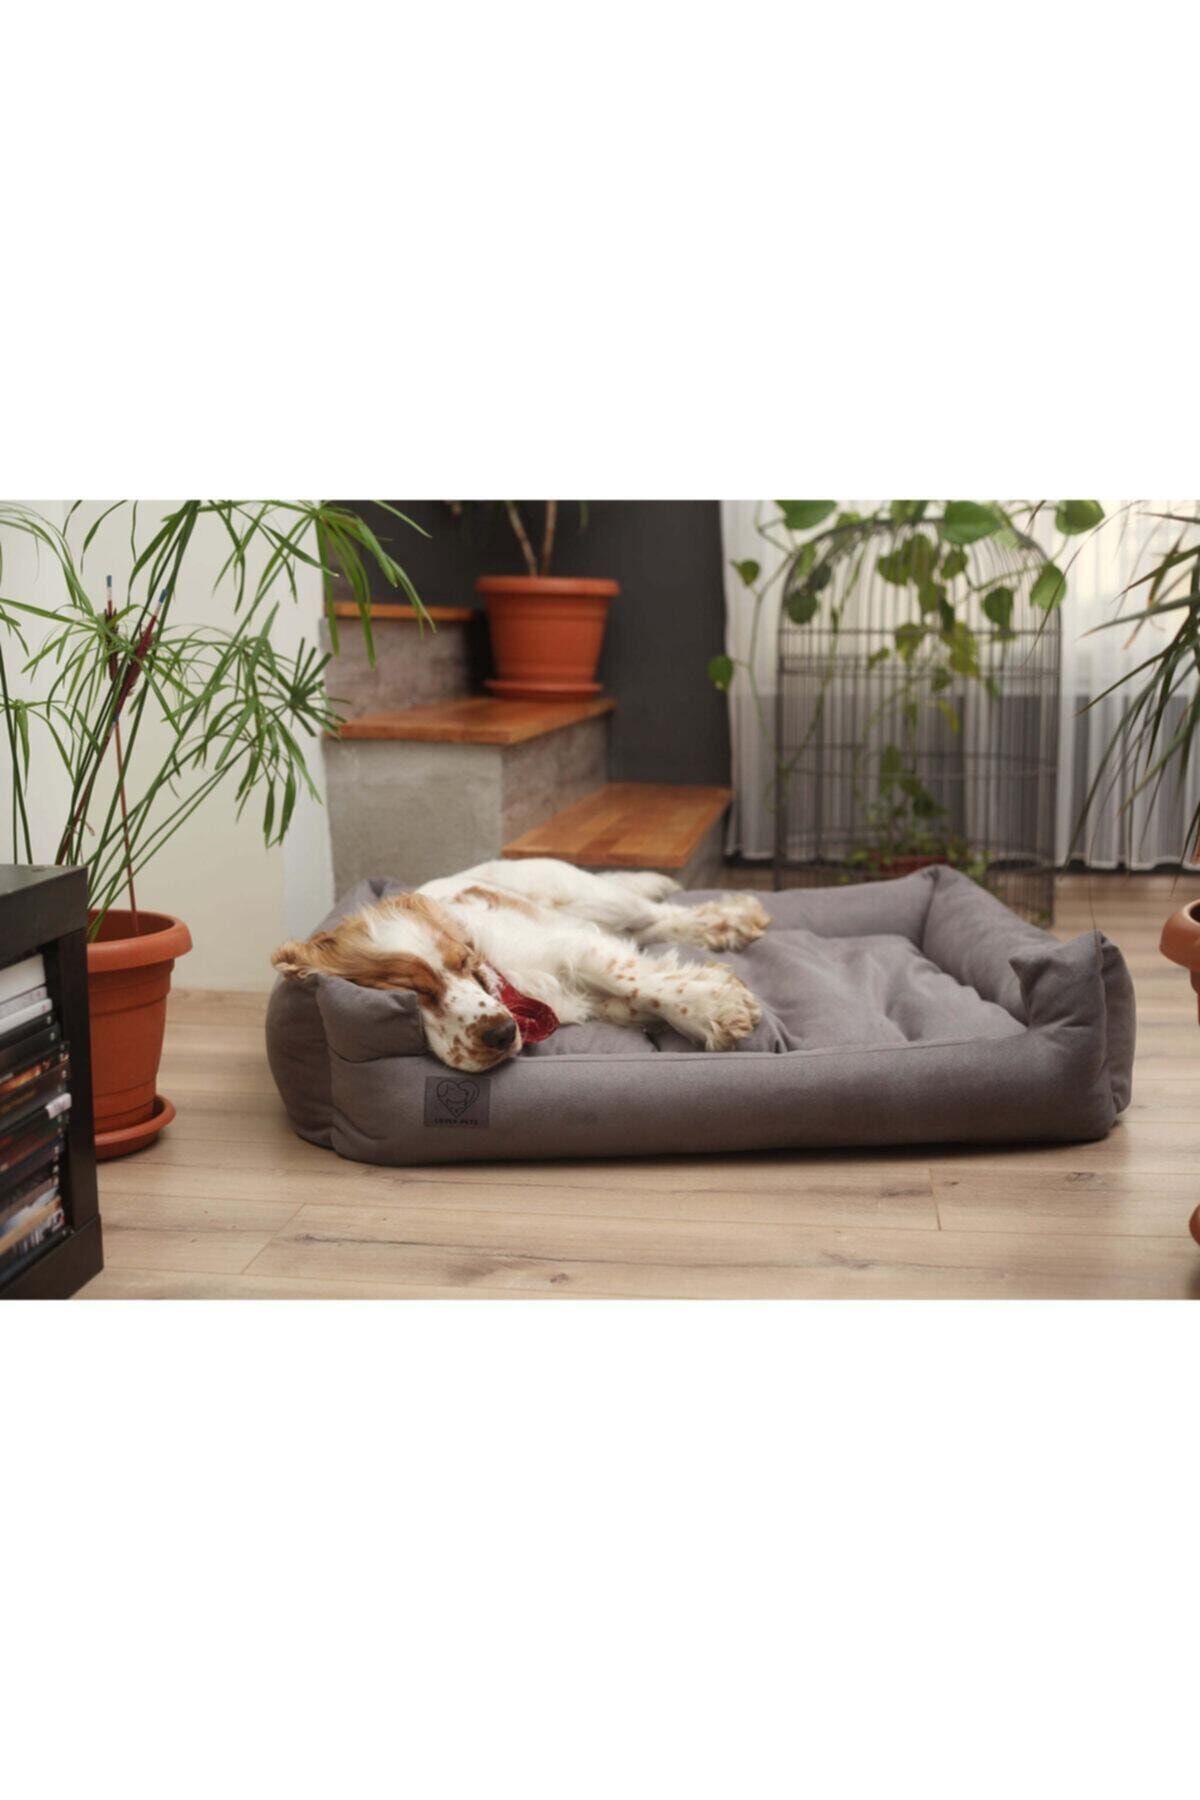 LUVLY PETS Köpek Yatağı Yıkanabilir - Tüplü Tay Tüylü Luvly Dream Box Köpek Yatağı - Gri - X-large 100x80